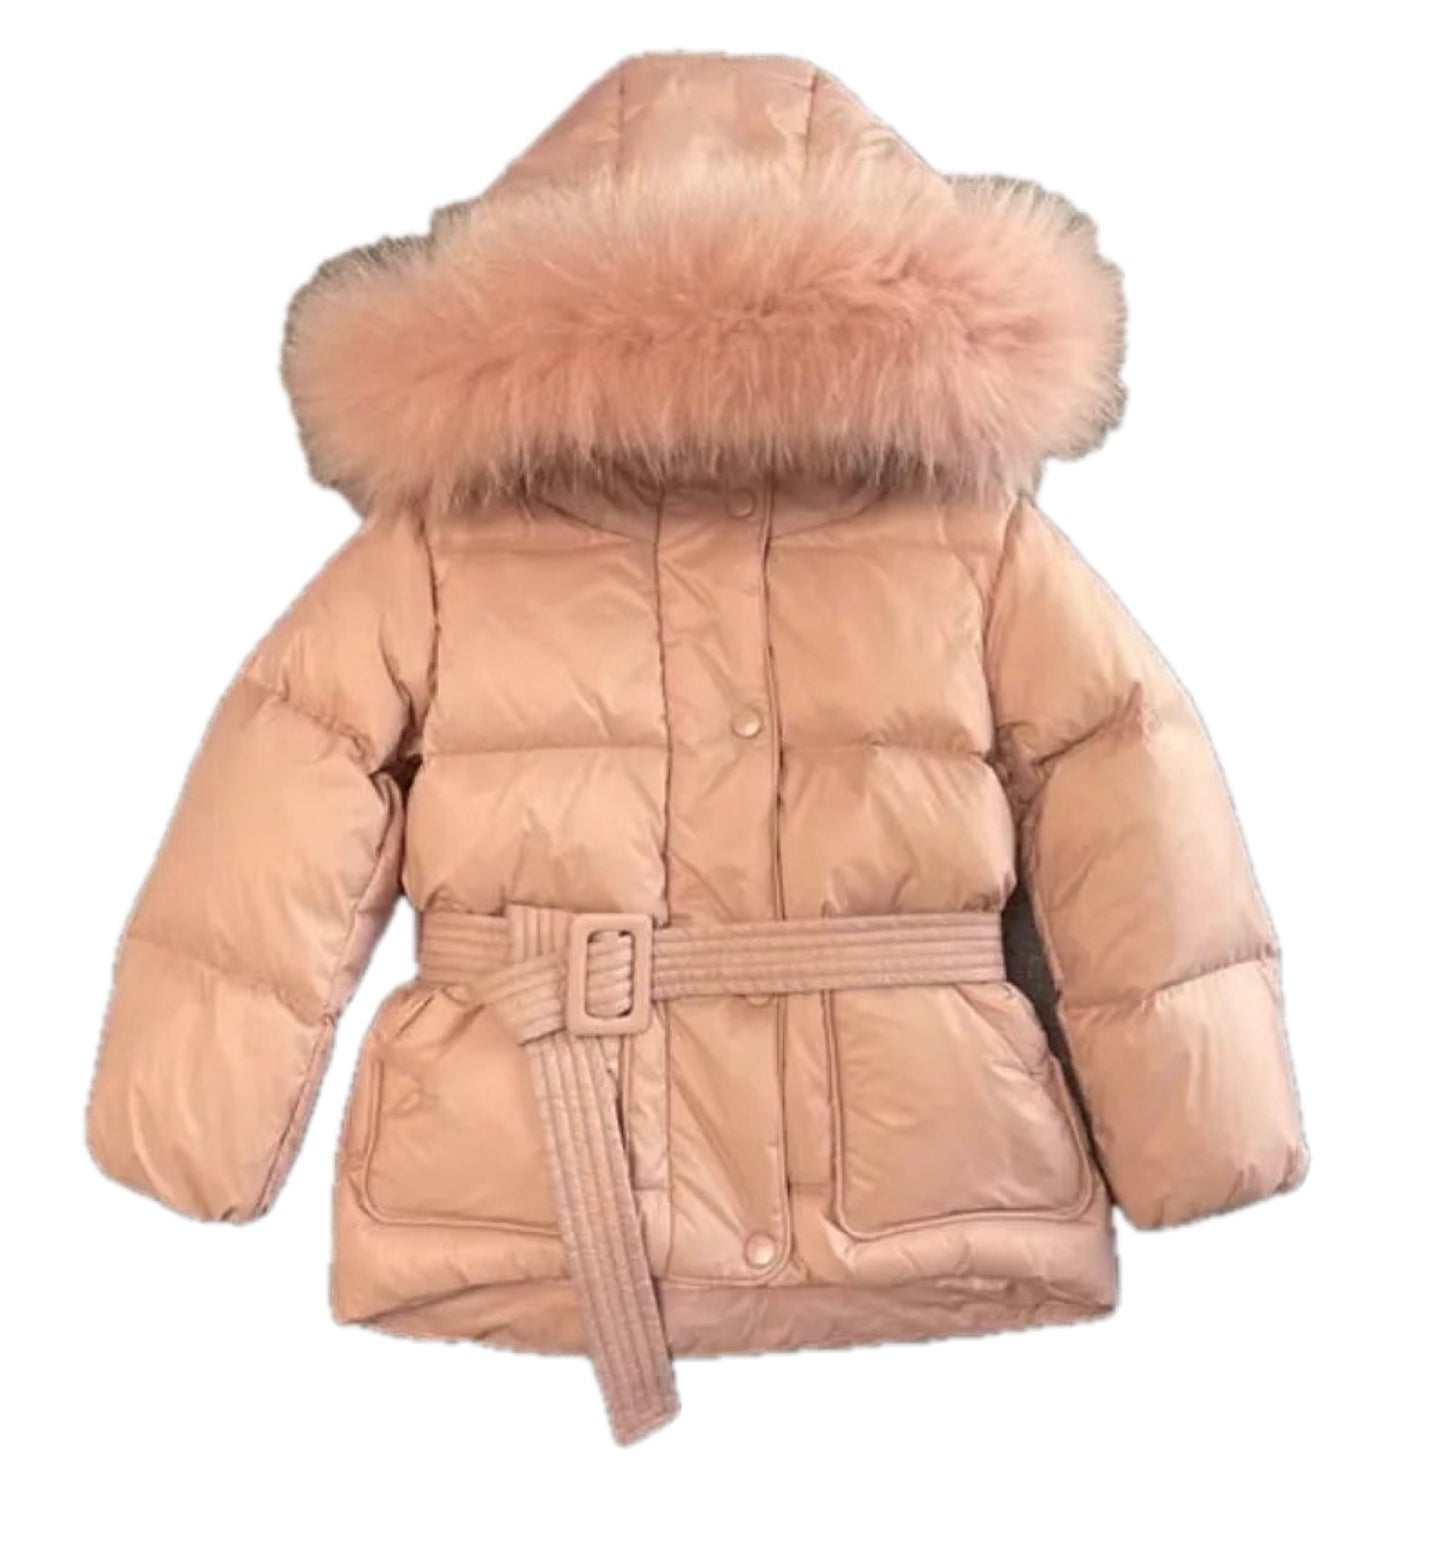 Girls Pink Real Fur Hooded Duckdown Jacket